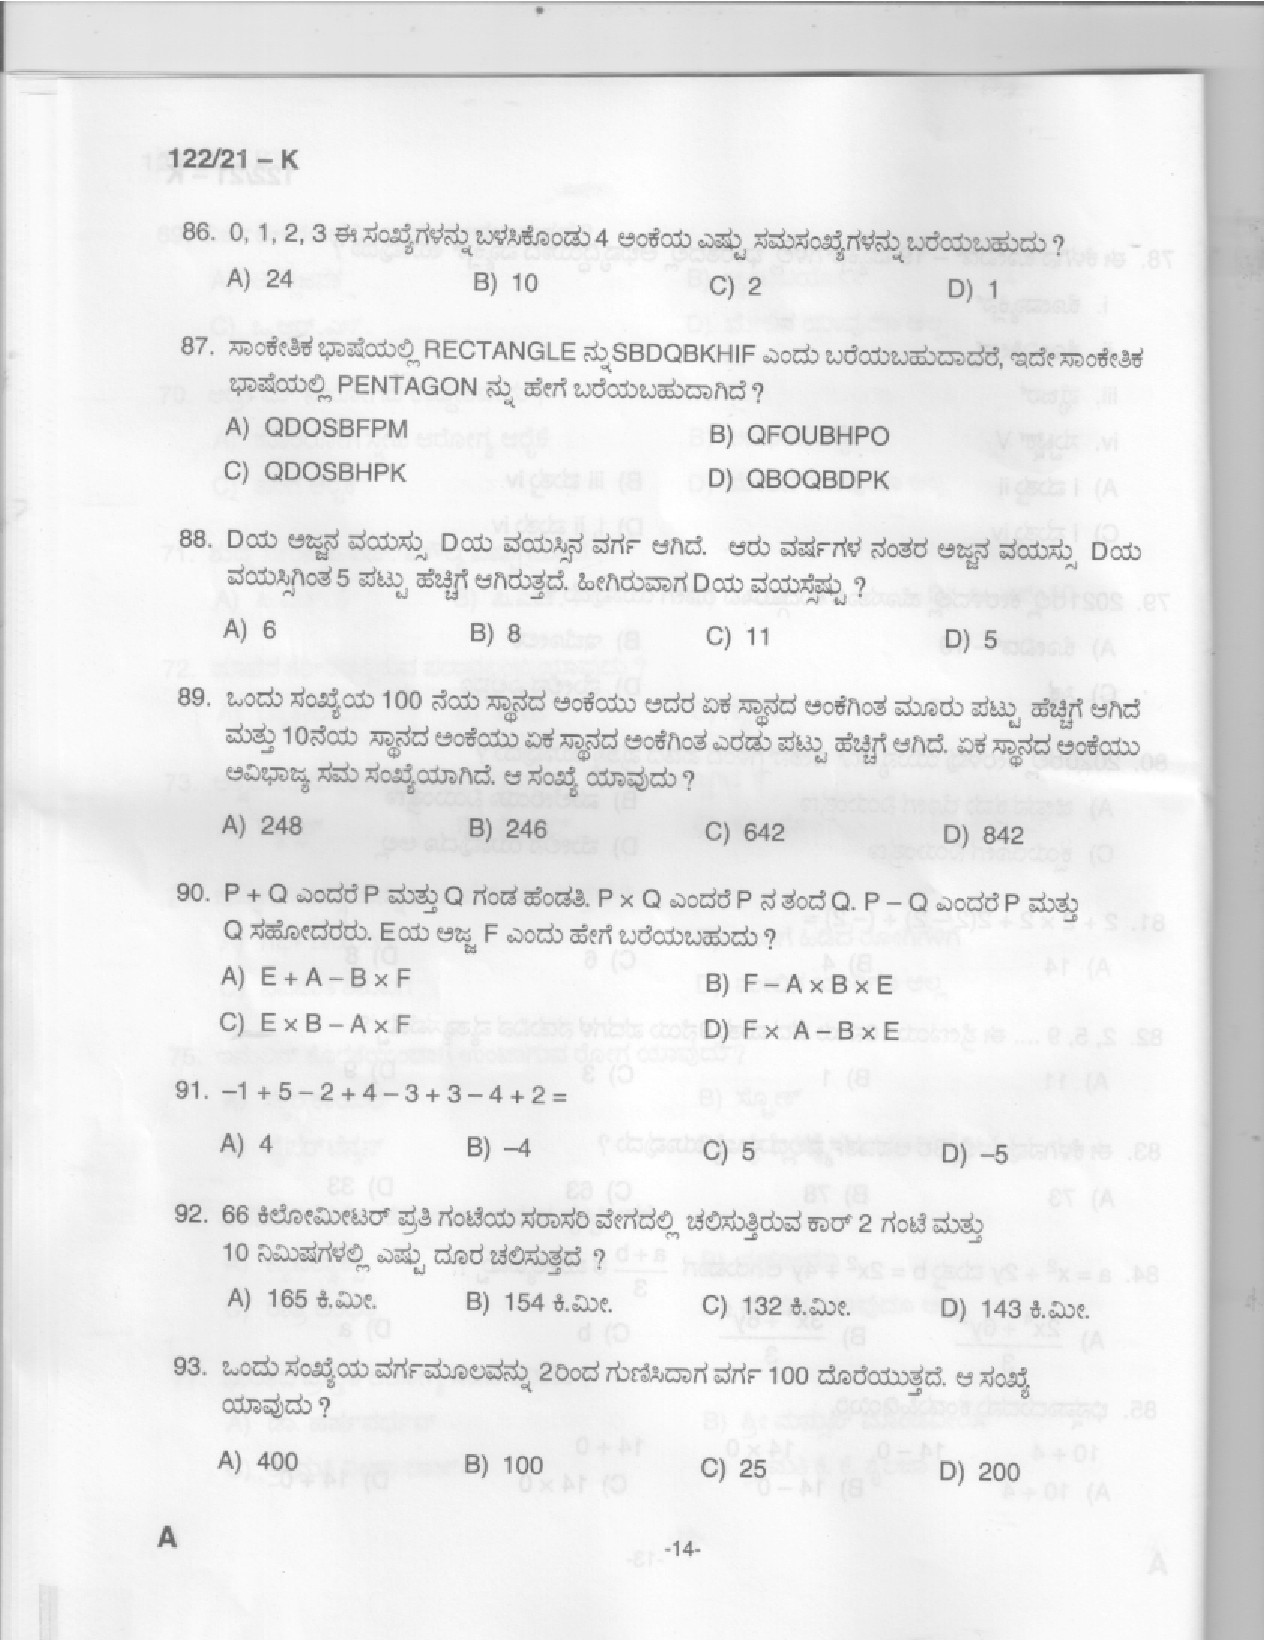 KPSC Upto SSLC Level Main Examination LGS Kannada 2021 Code 1222021 K 12